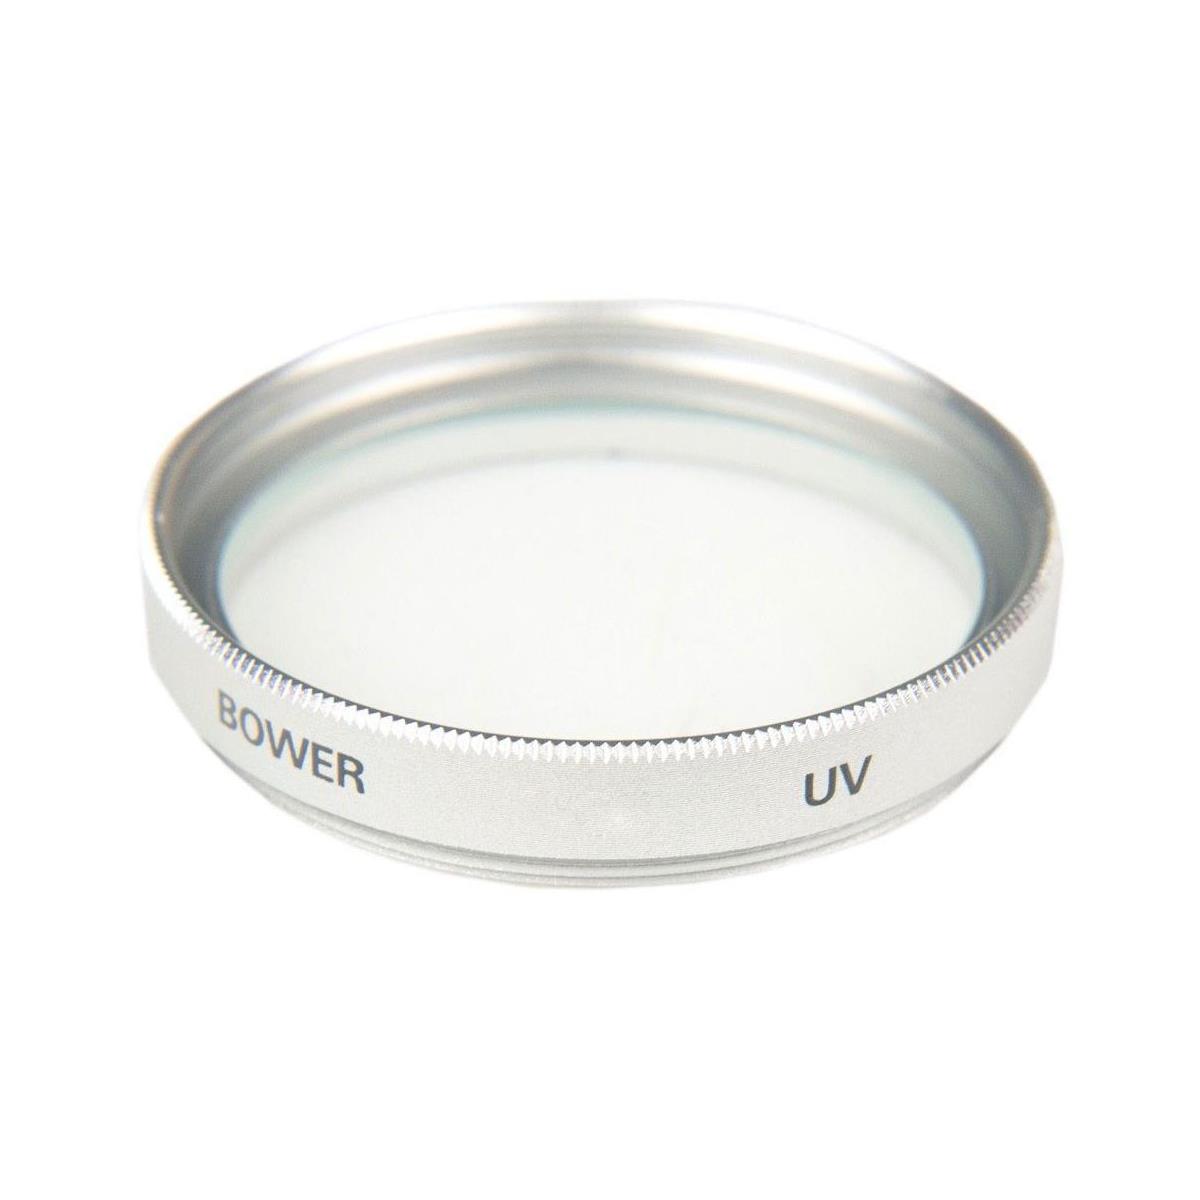 Bower 25mm UV - Ultra Violet Filter